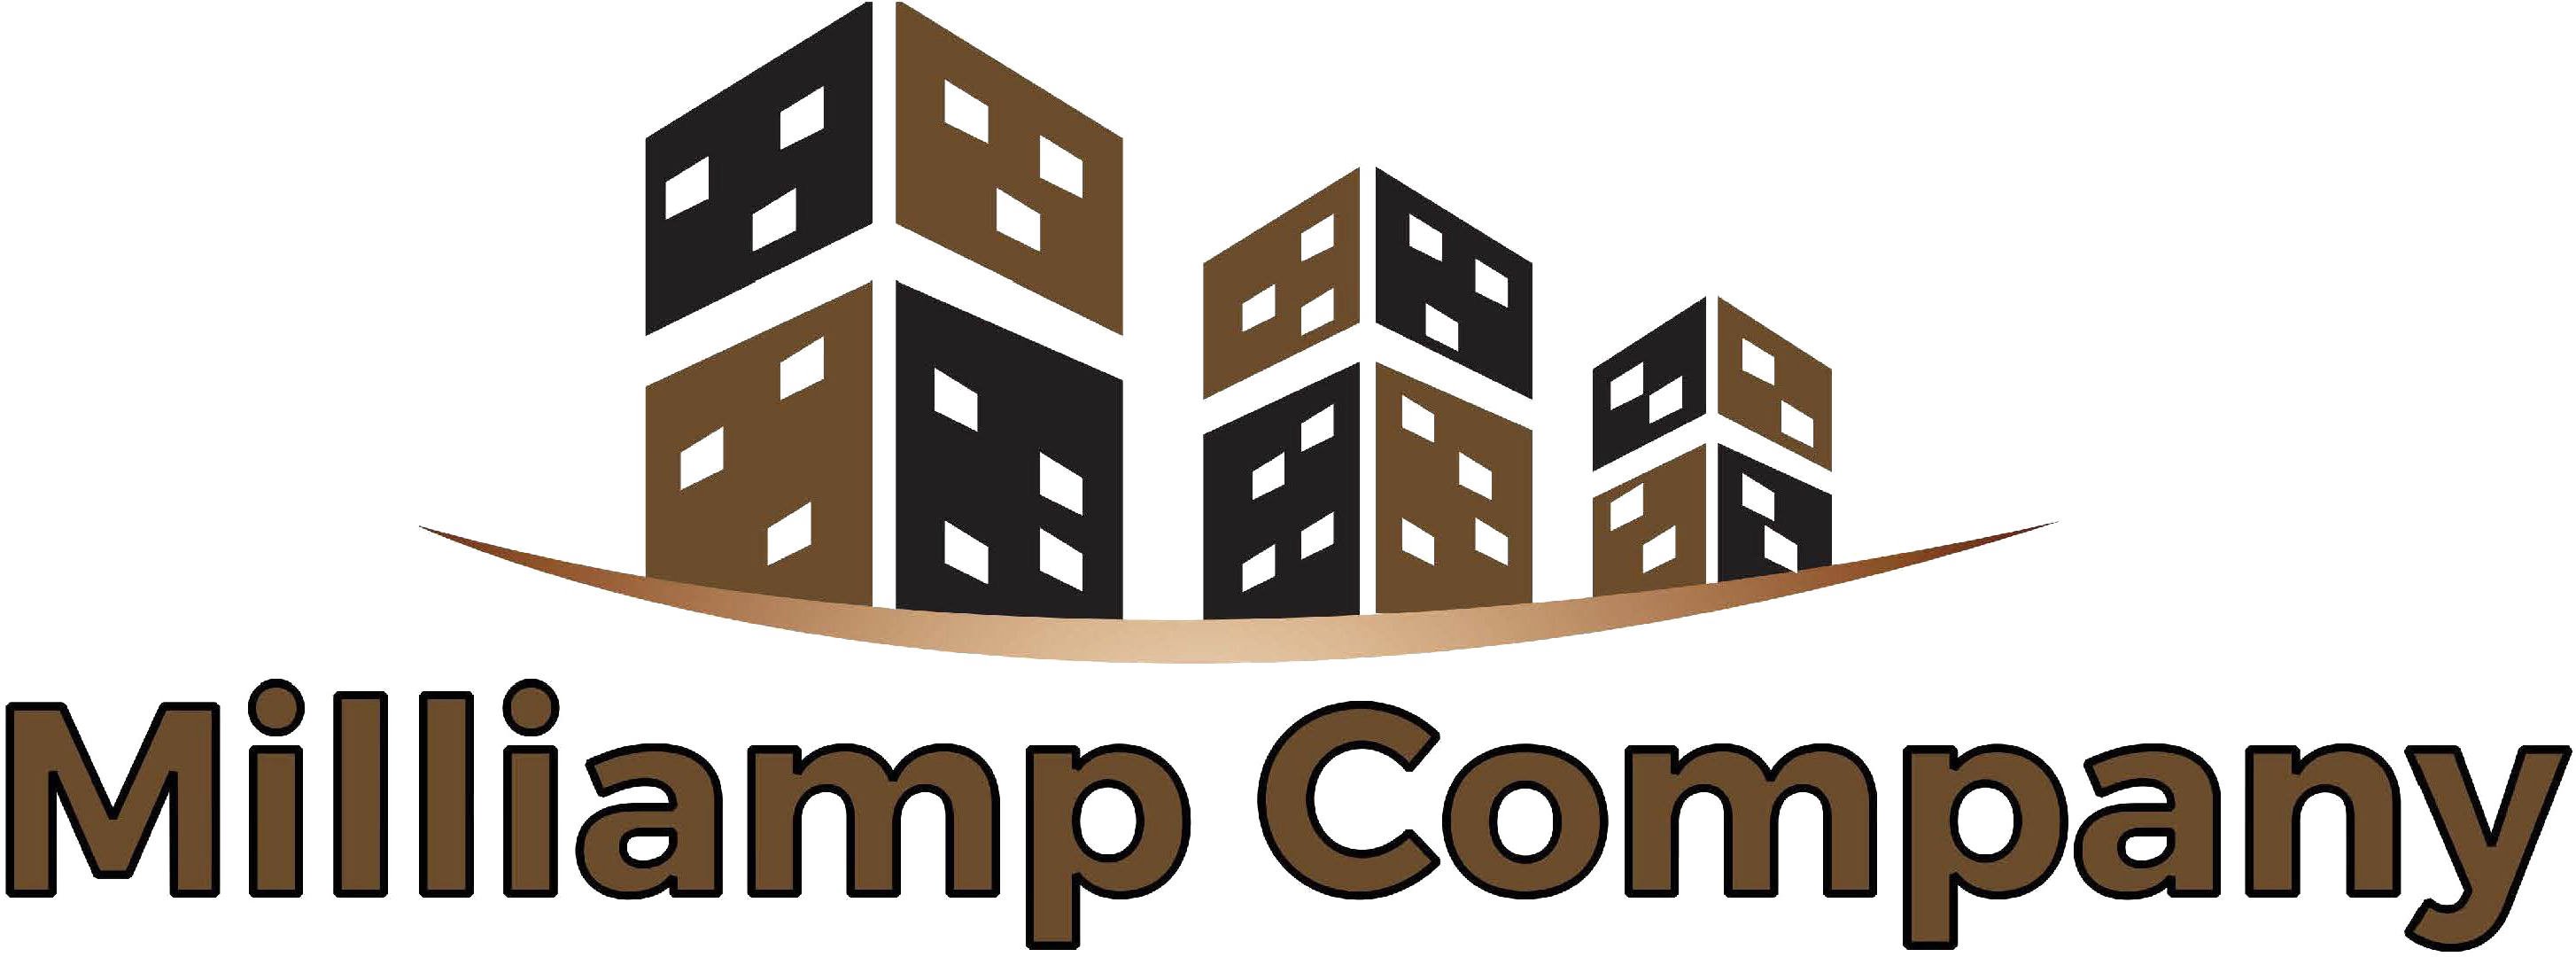 Milliamp Company company logo